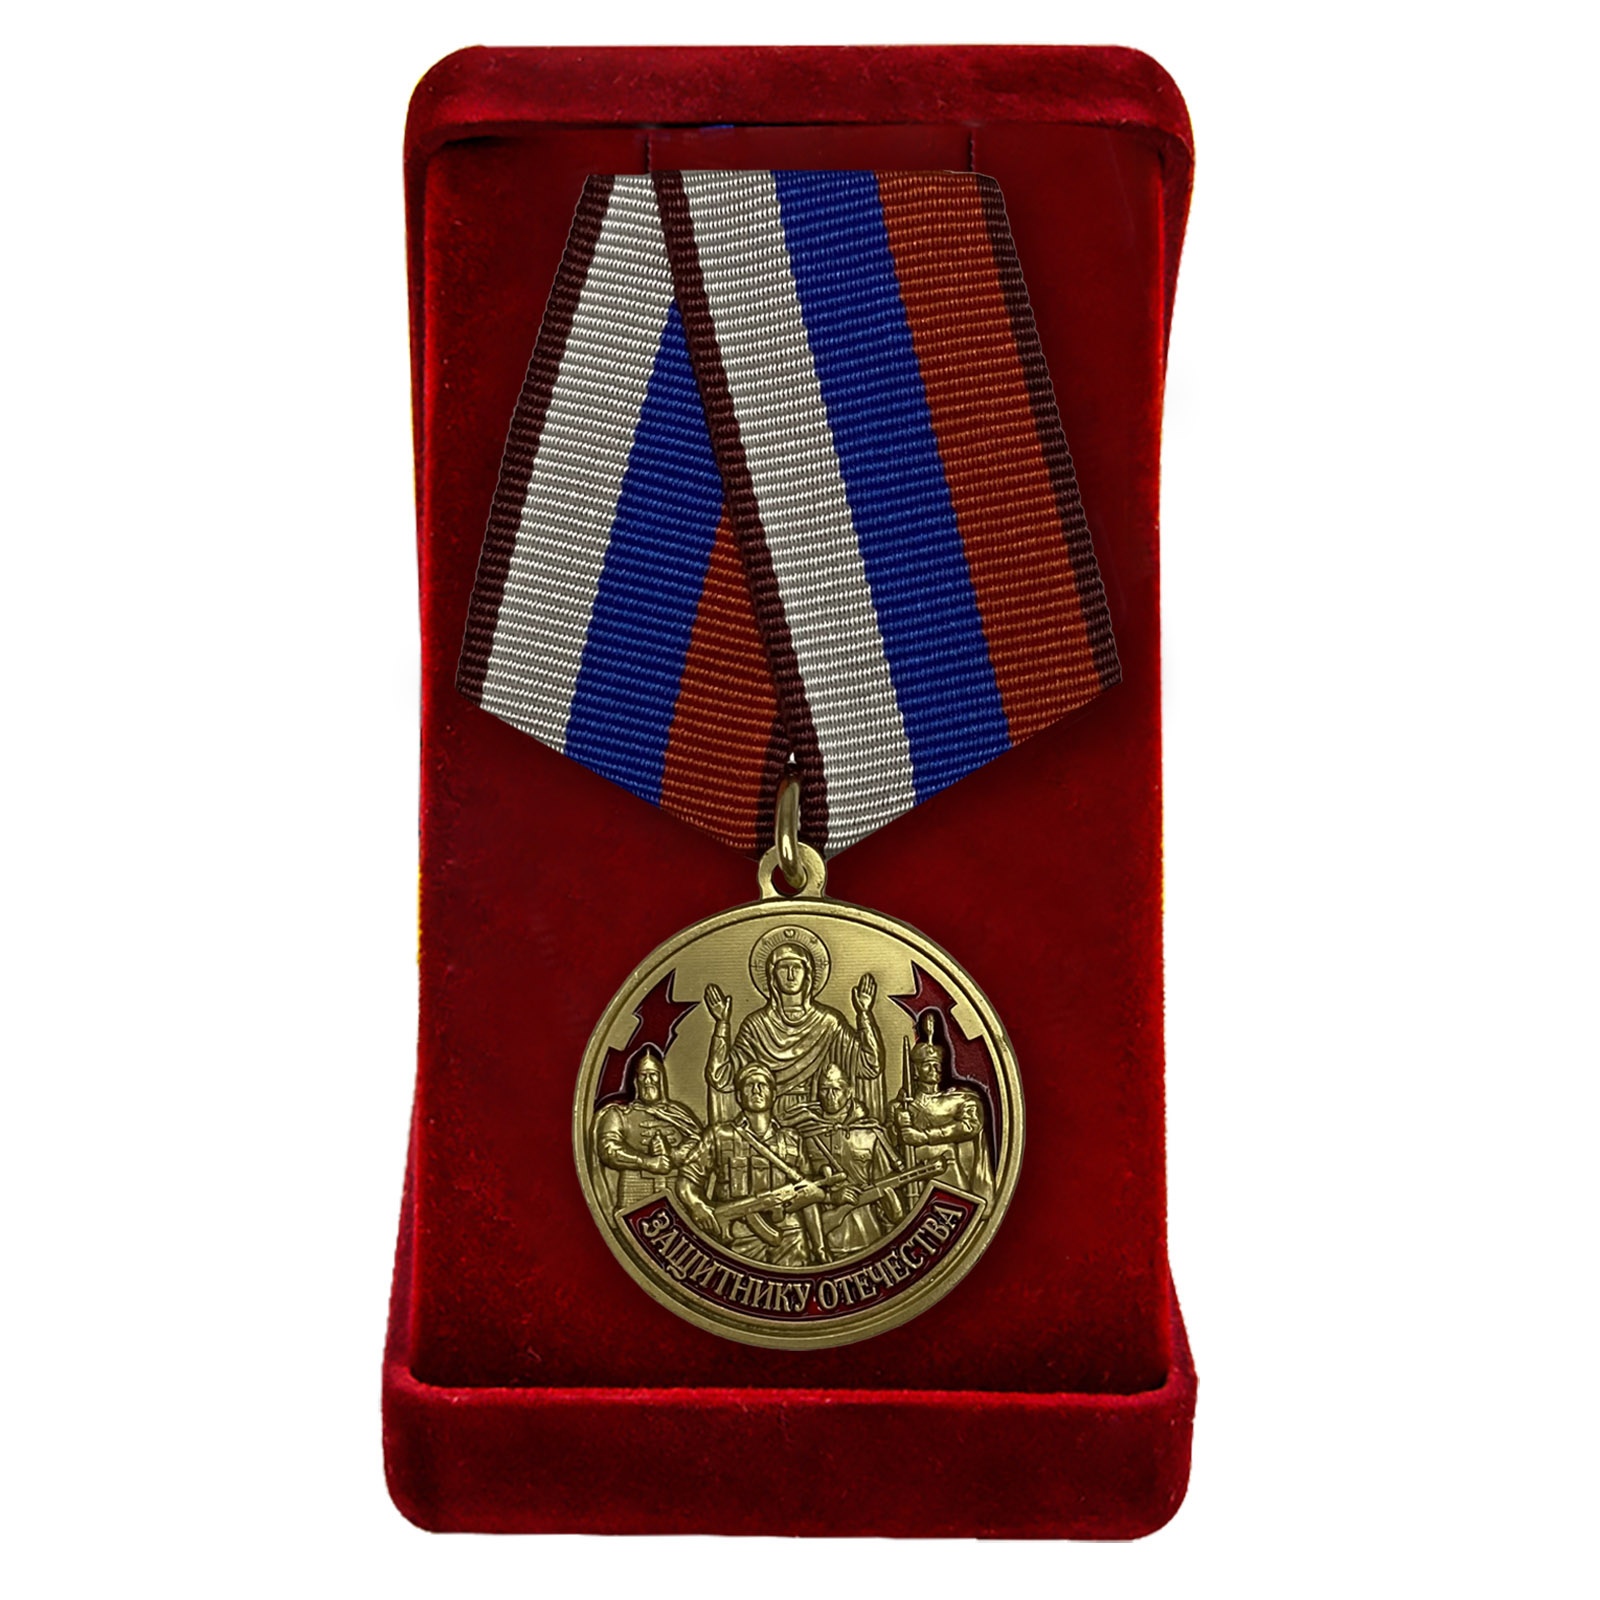 Купить наградную медаль Защитнику Отечества 23 февраля в подарок